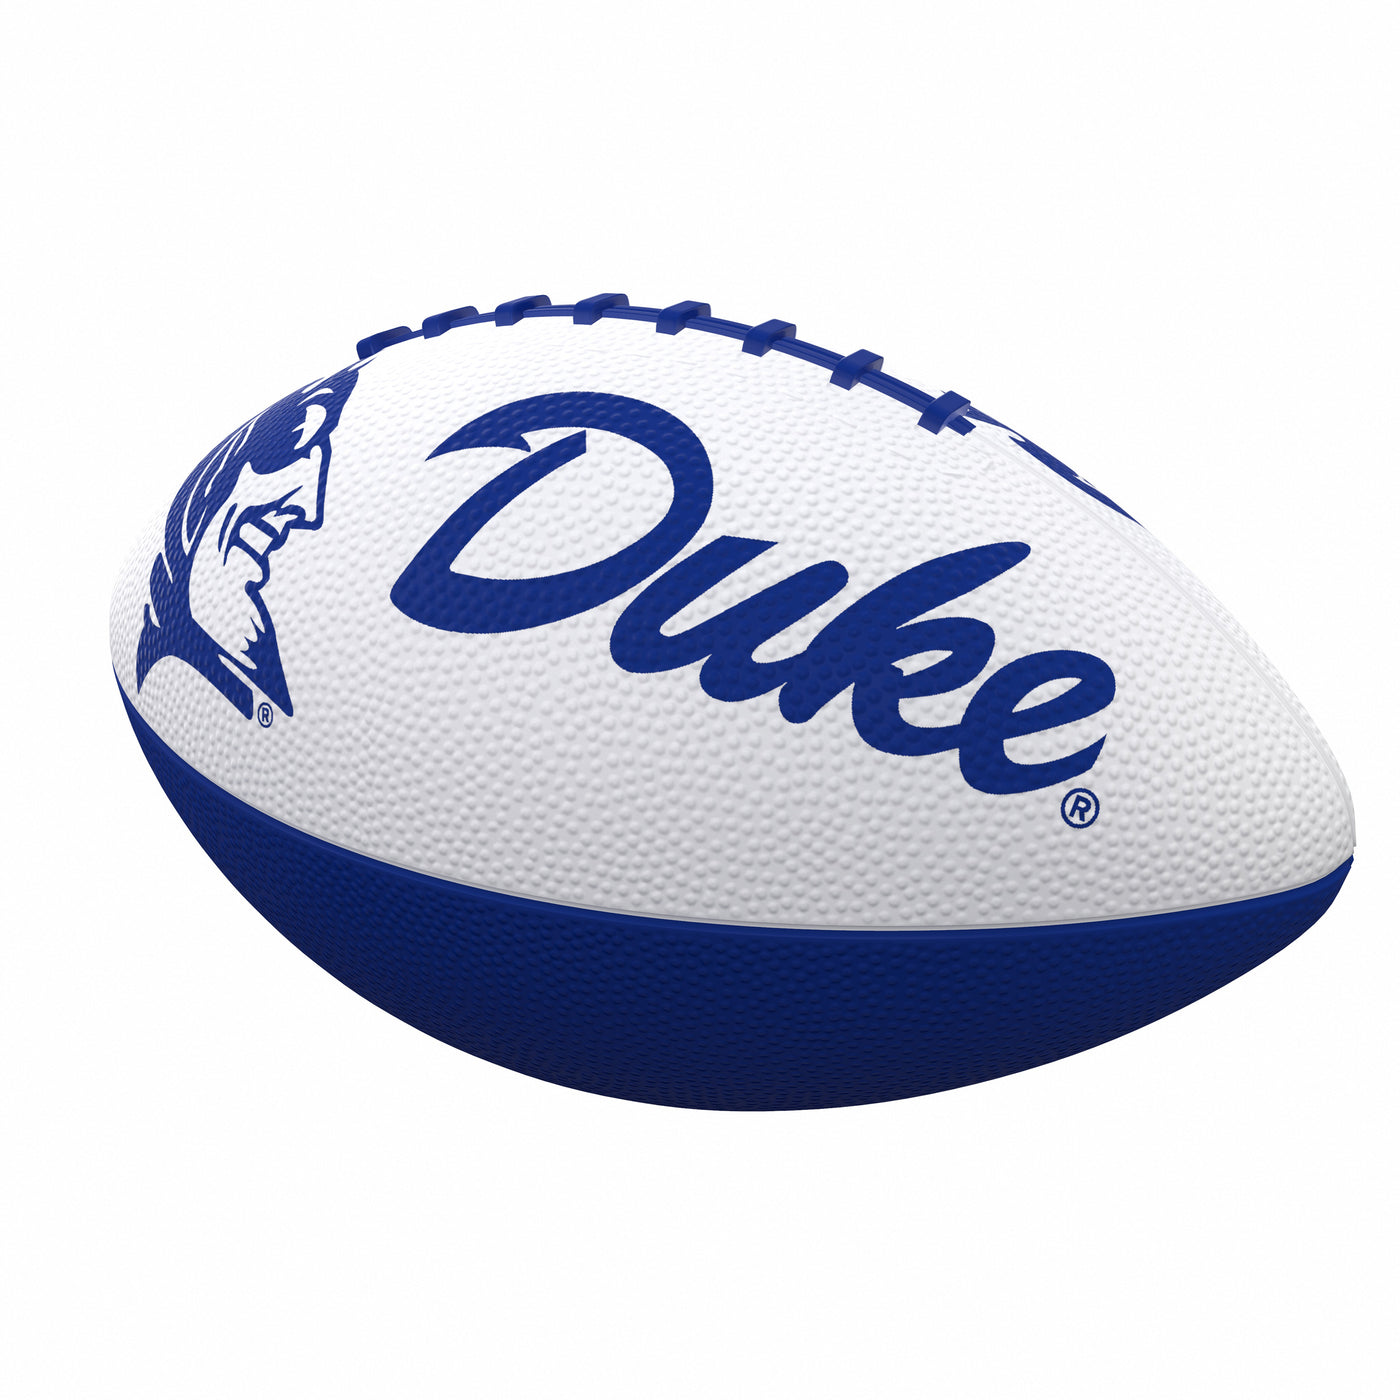 Duke Combo Logo Junior-Size Rubber Football